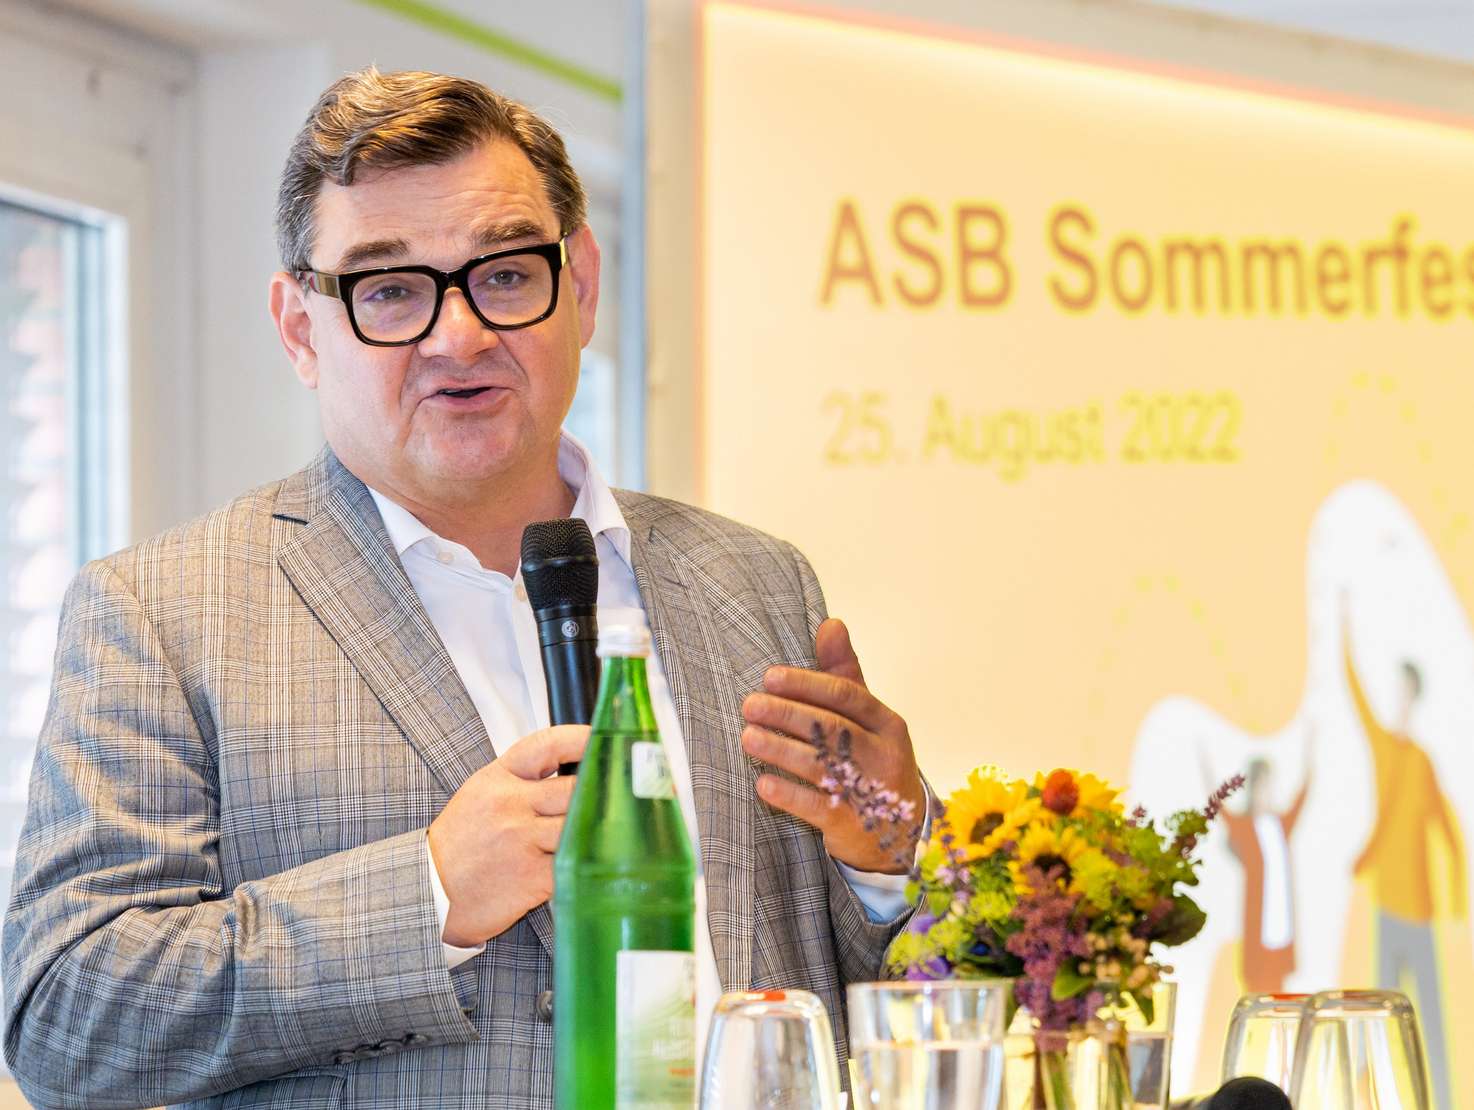 Der neue Landesvorsitzende Marcus Weinberg begrüßt die Gäste des ASB Sommerfestes 2022. Foto: Annette Schrader.